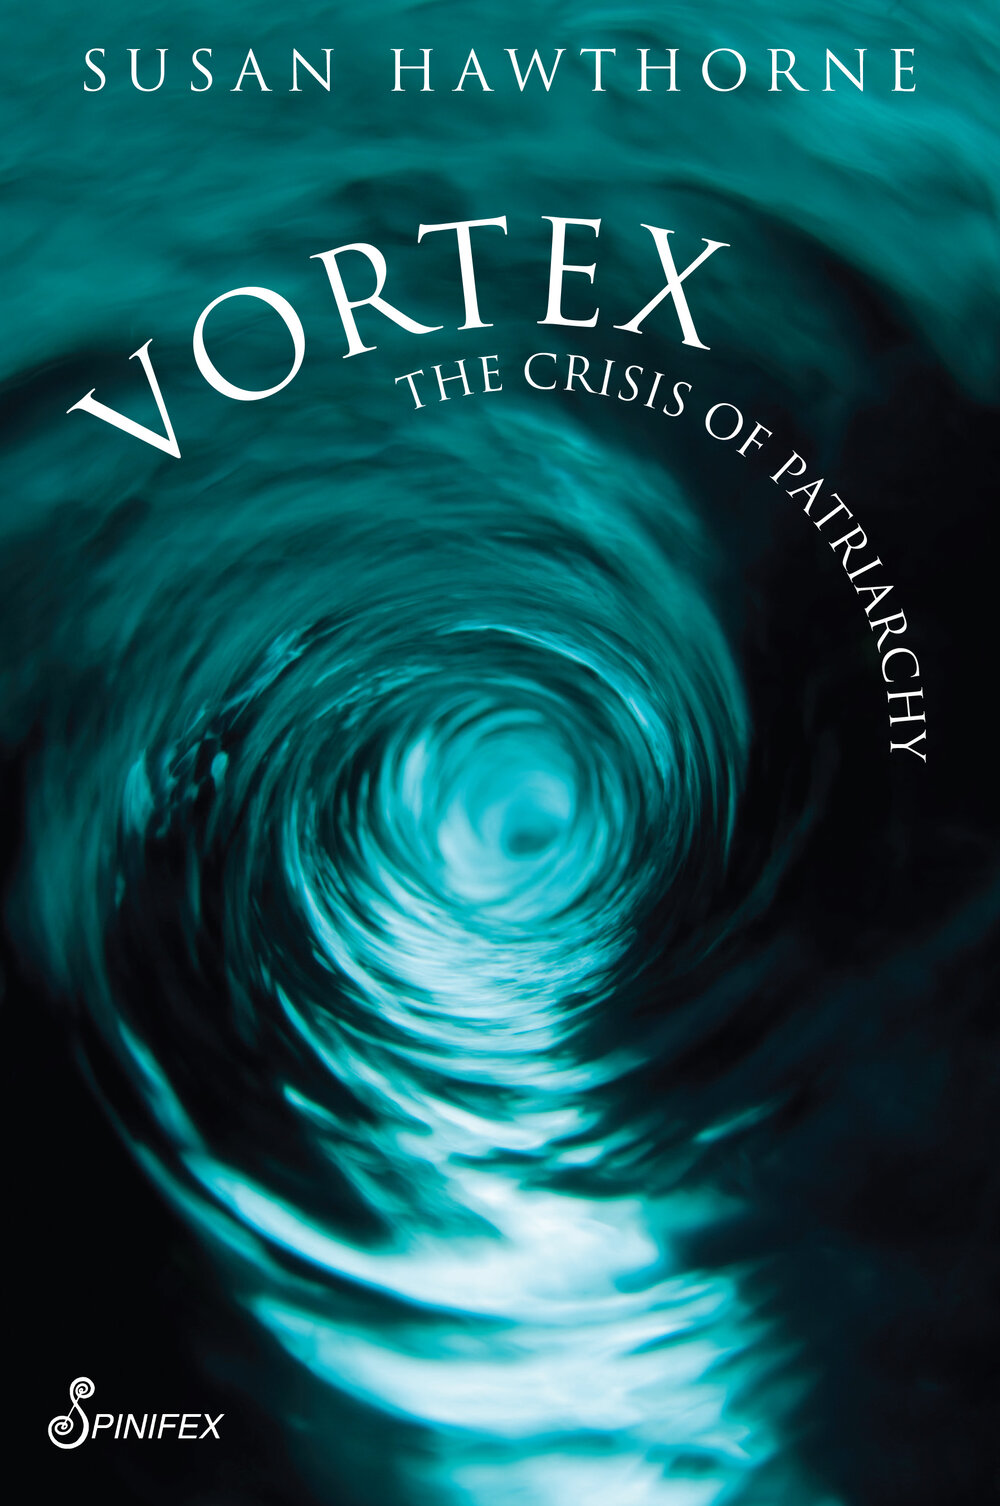 Vortex: The Crisis of Patriarchy